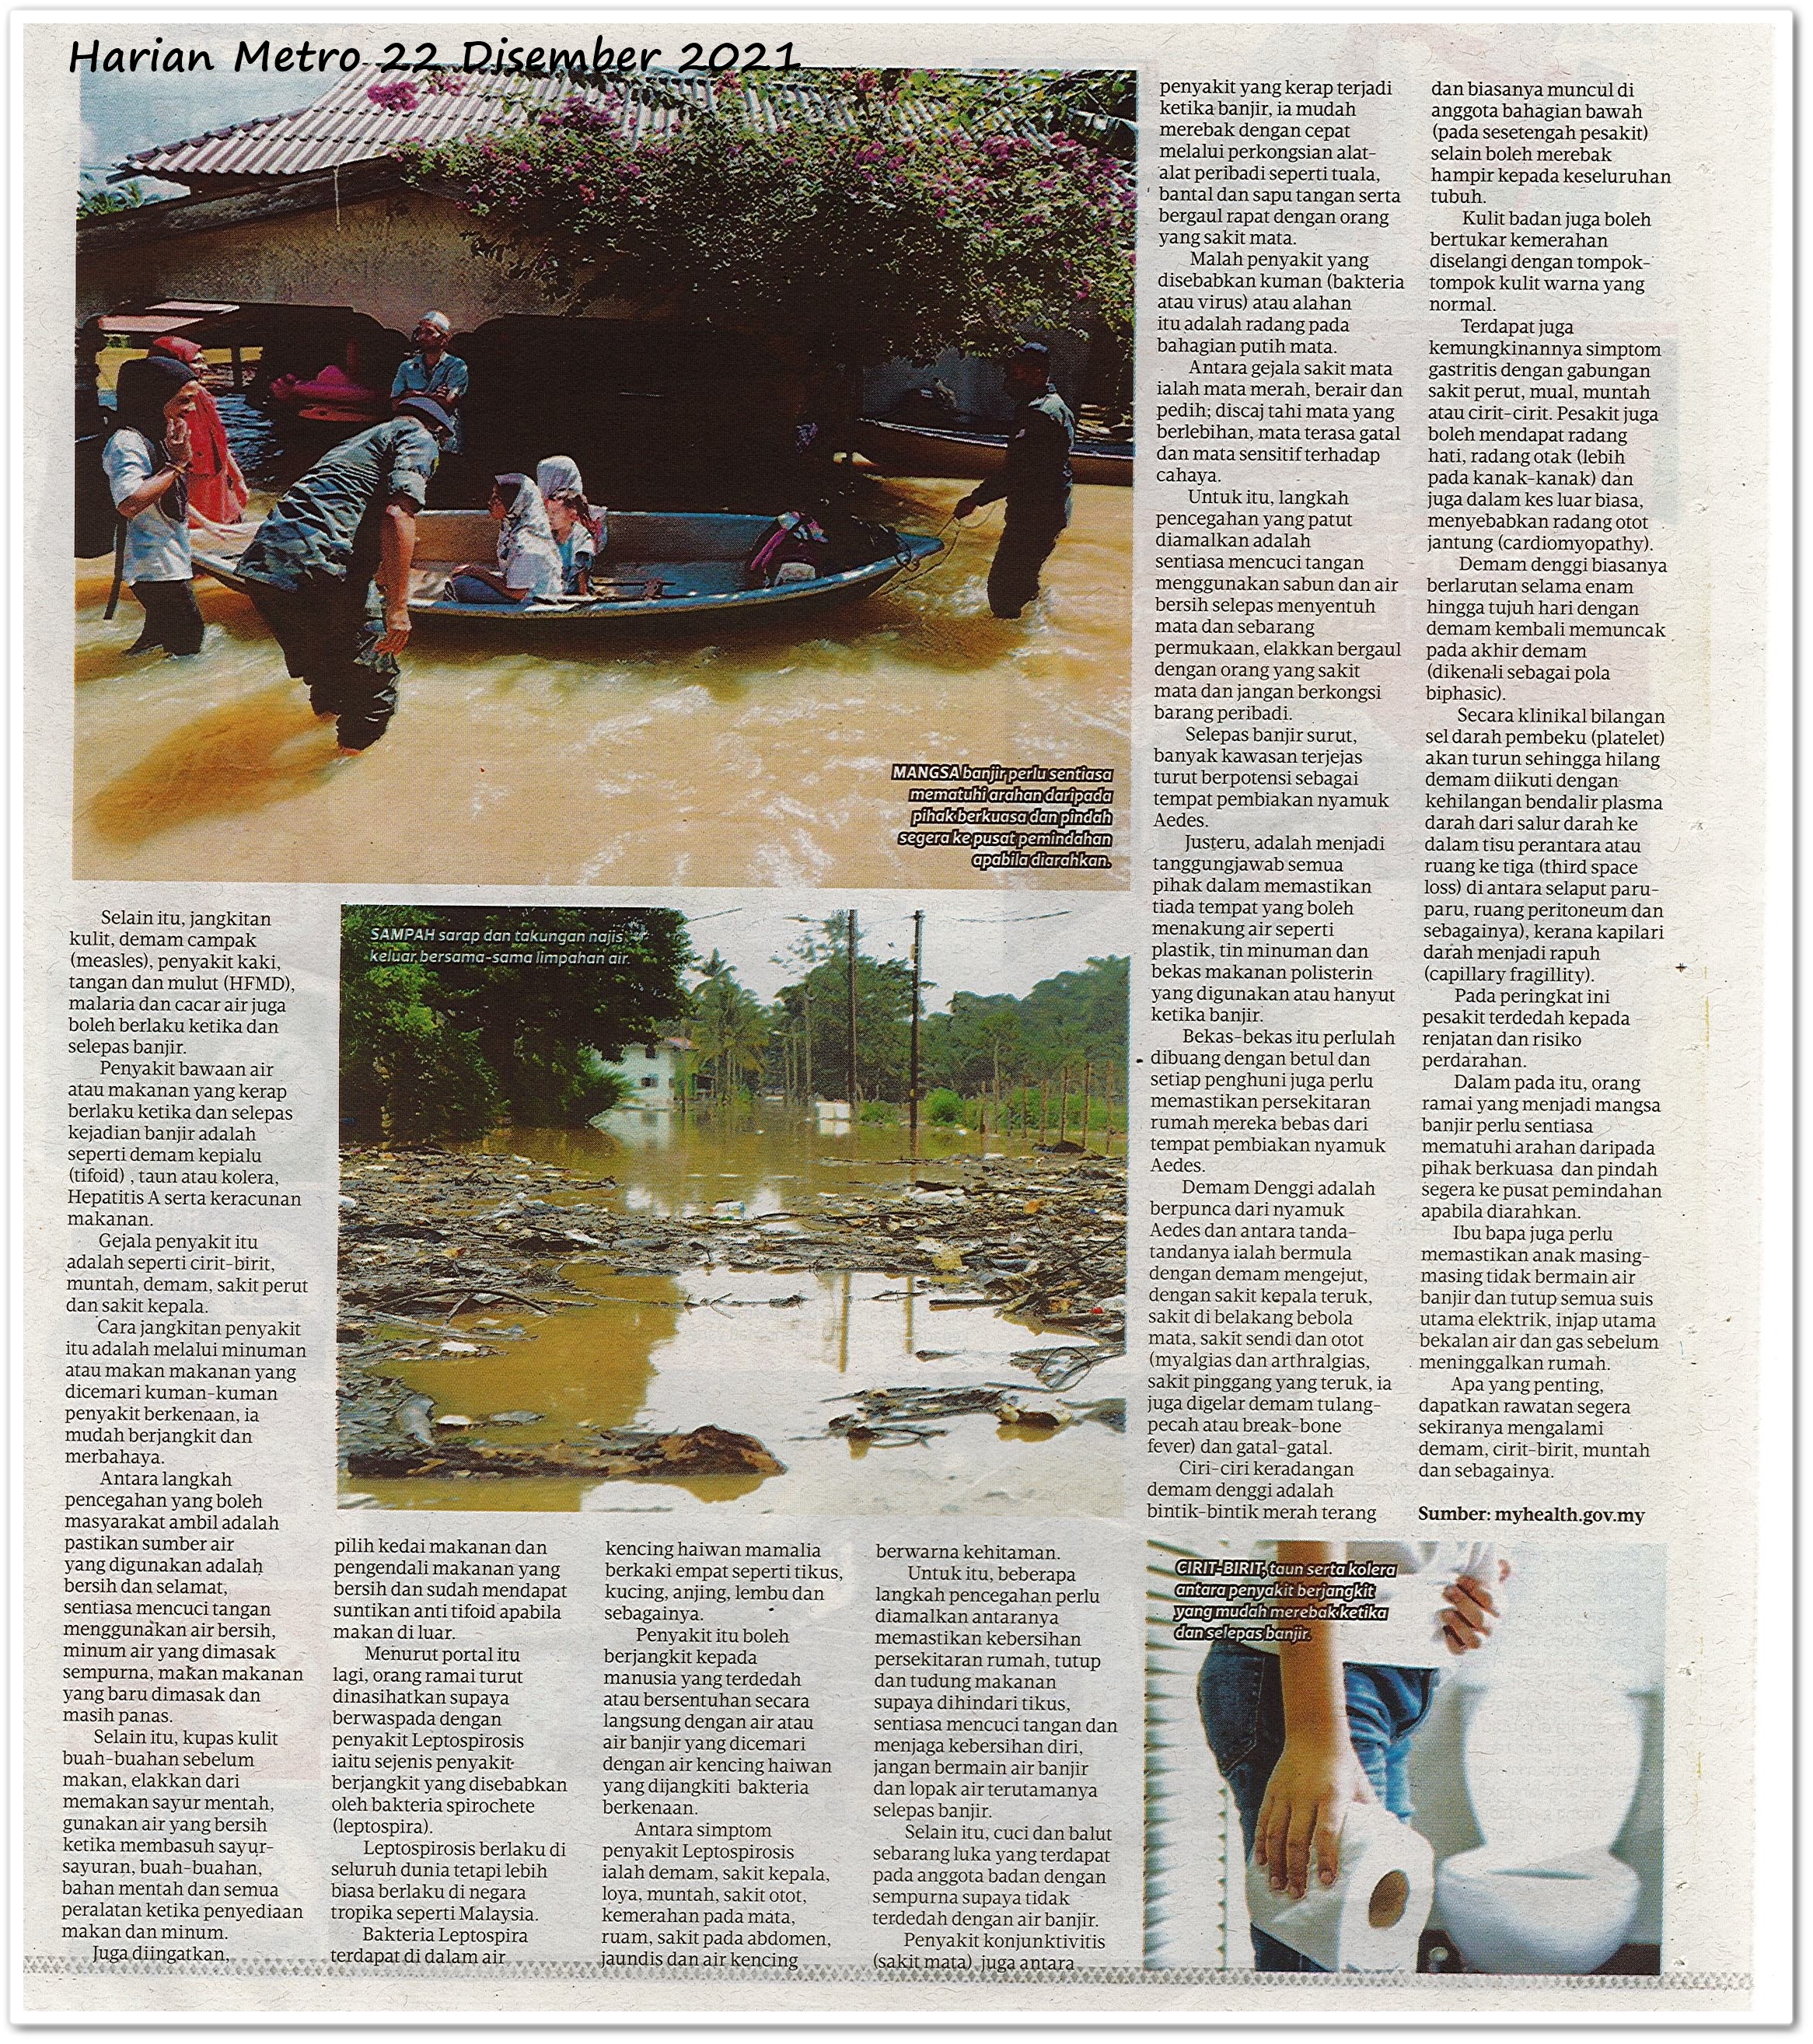 Awas penyakit bawaan air ; Bencana tidak diduga undang pelbagai penyakit berjangkit ketika, selepas banjir - Keratan akhbar Harian Metro 22 Disember 2021